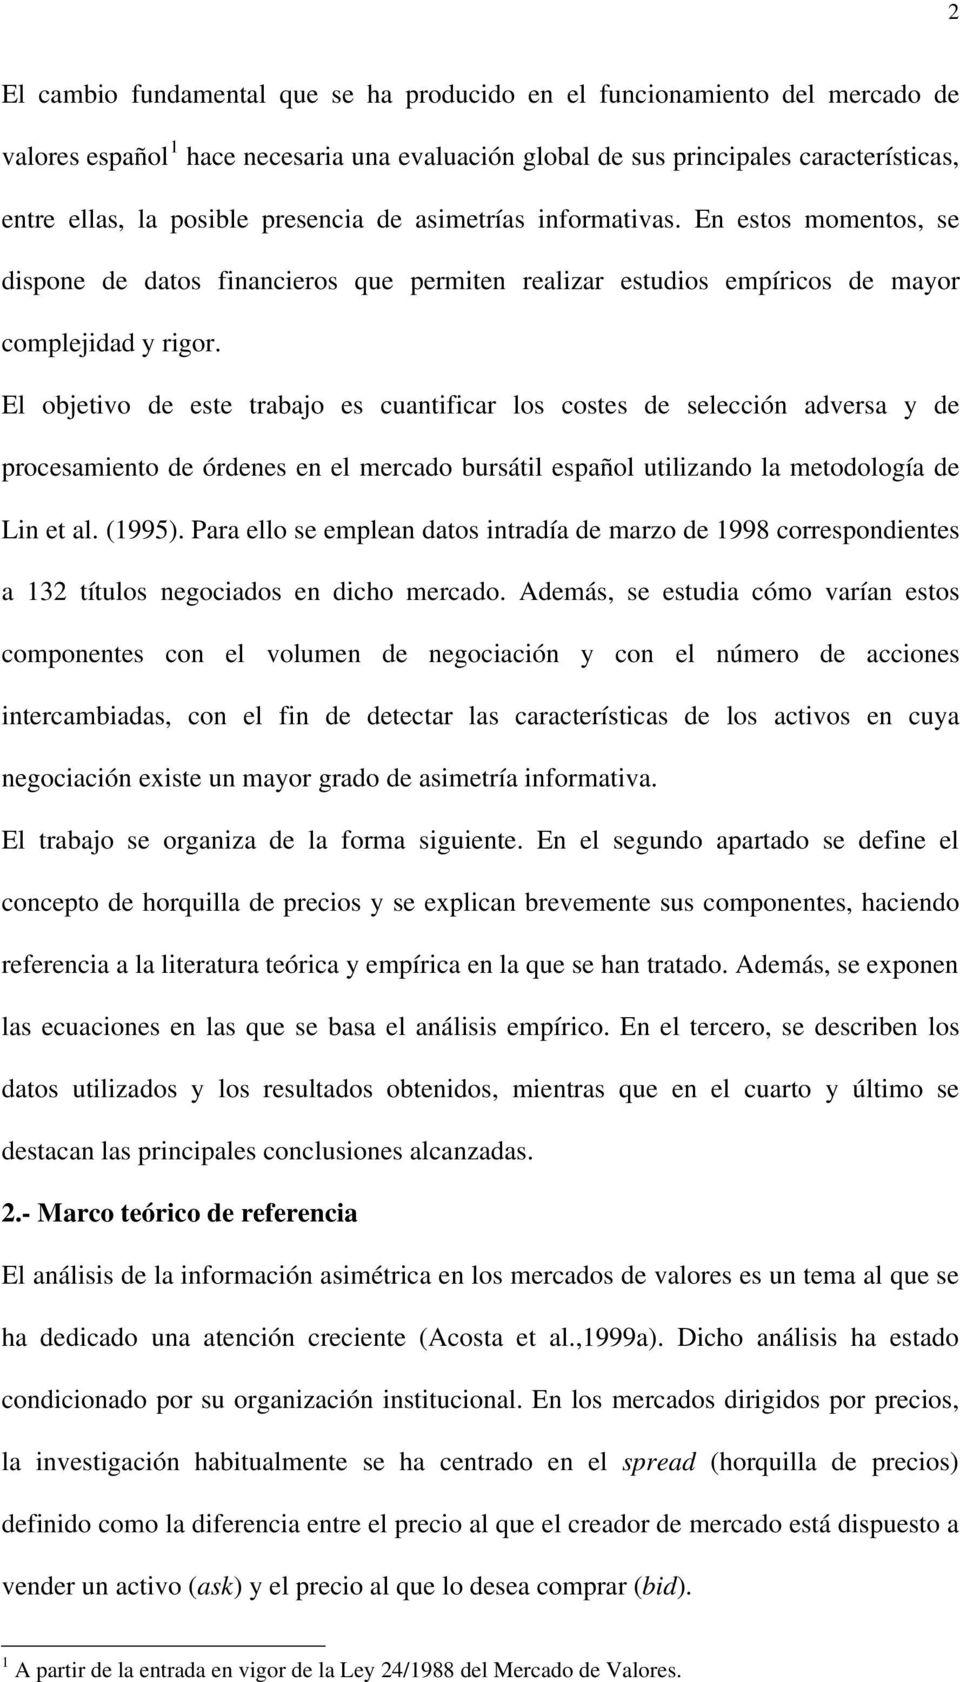 El objetivo de este trabajo es cuantificar los costes de selección adversa y de procesamiento de órdenes en el mercado bursátil español utilizando la metodología de Lin et al. (1995).